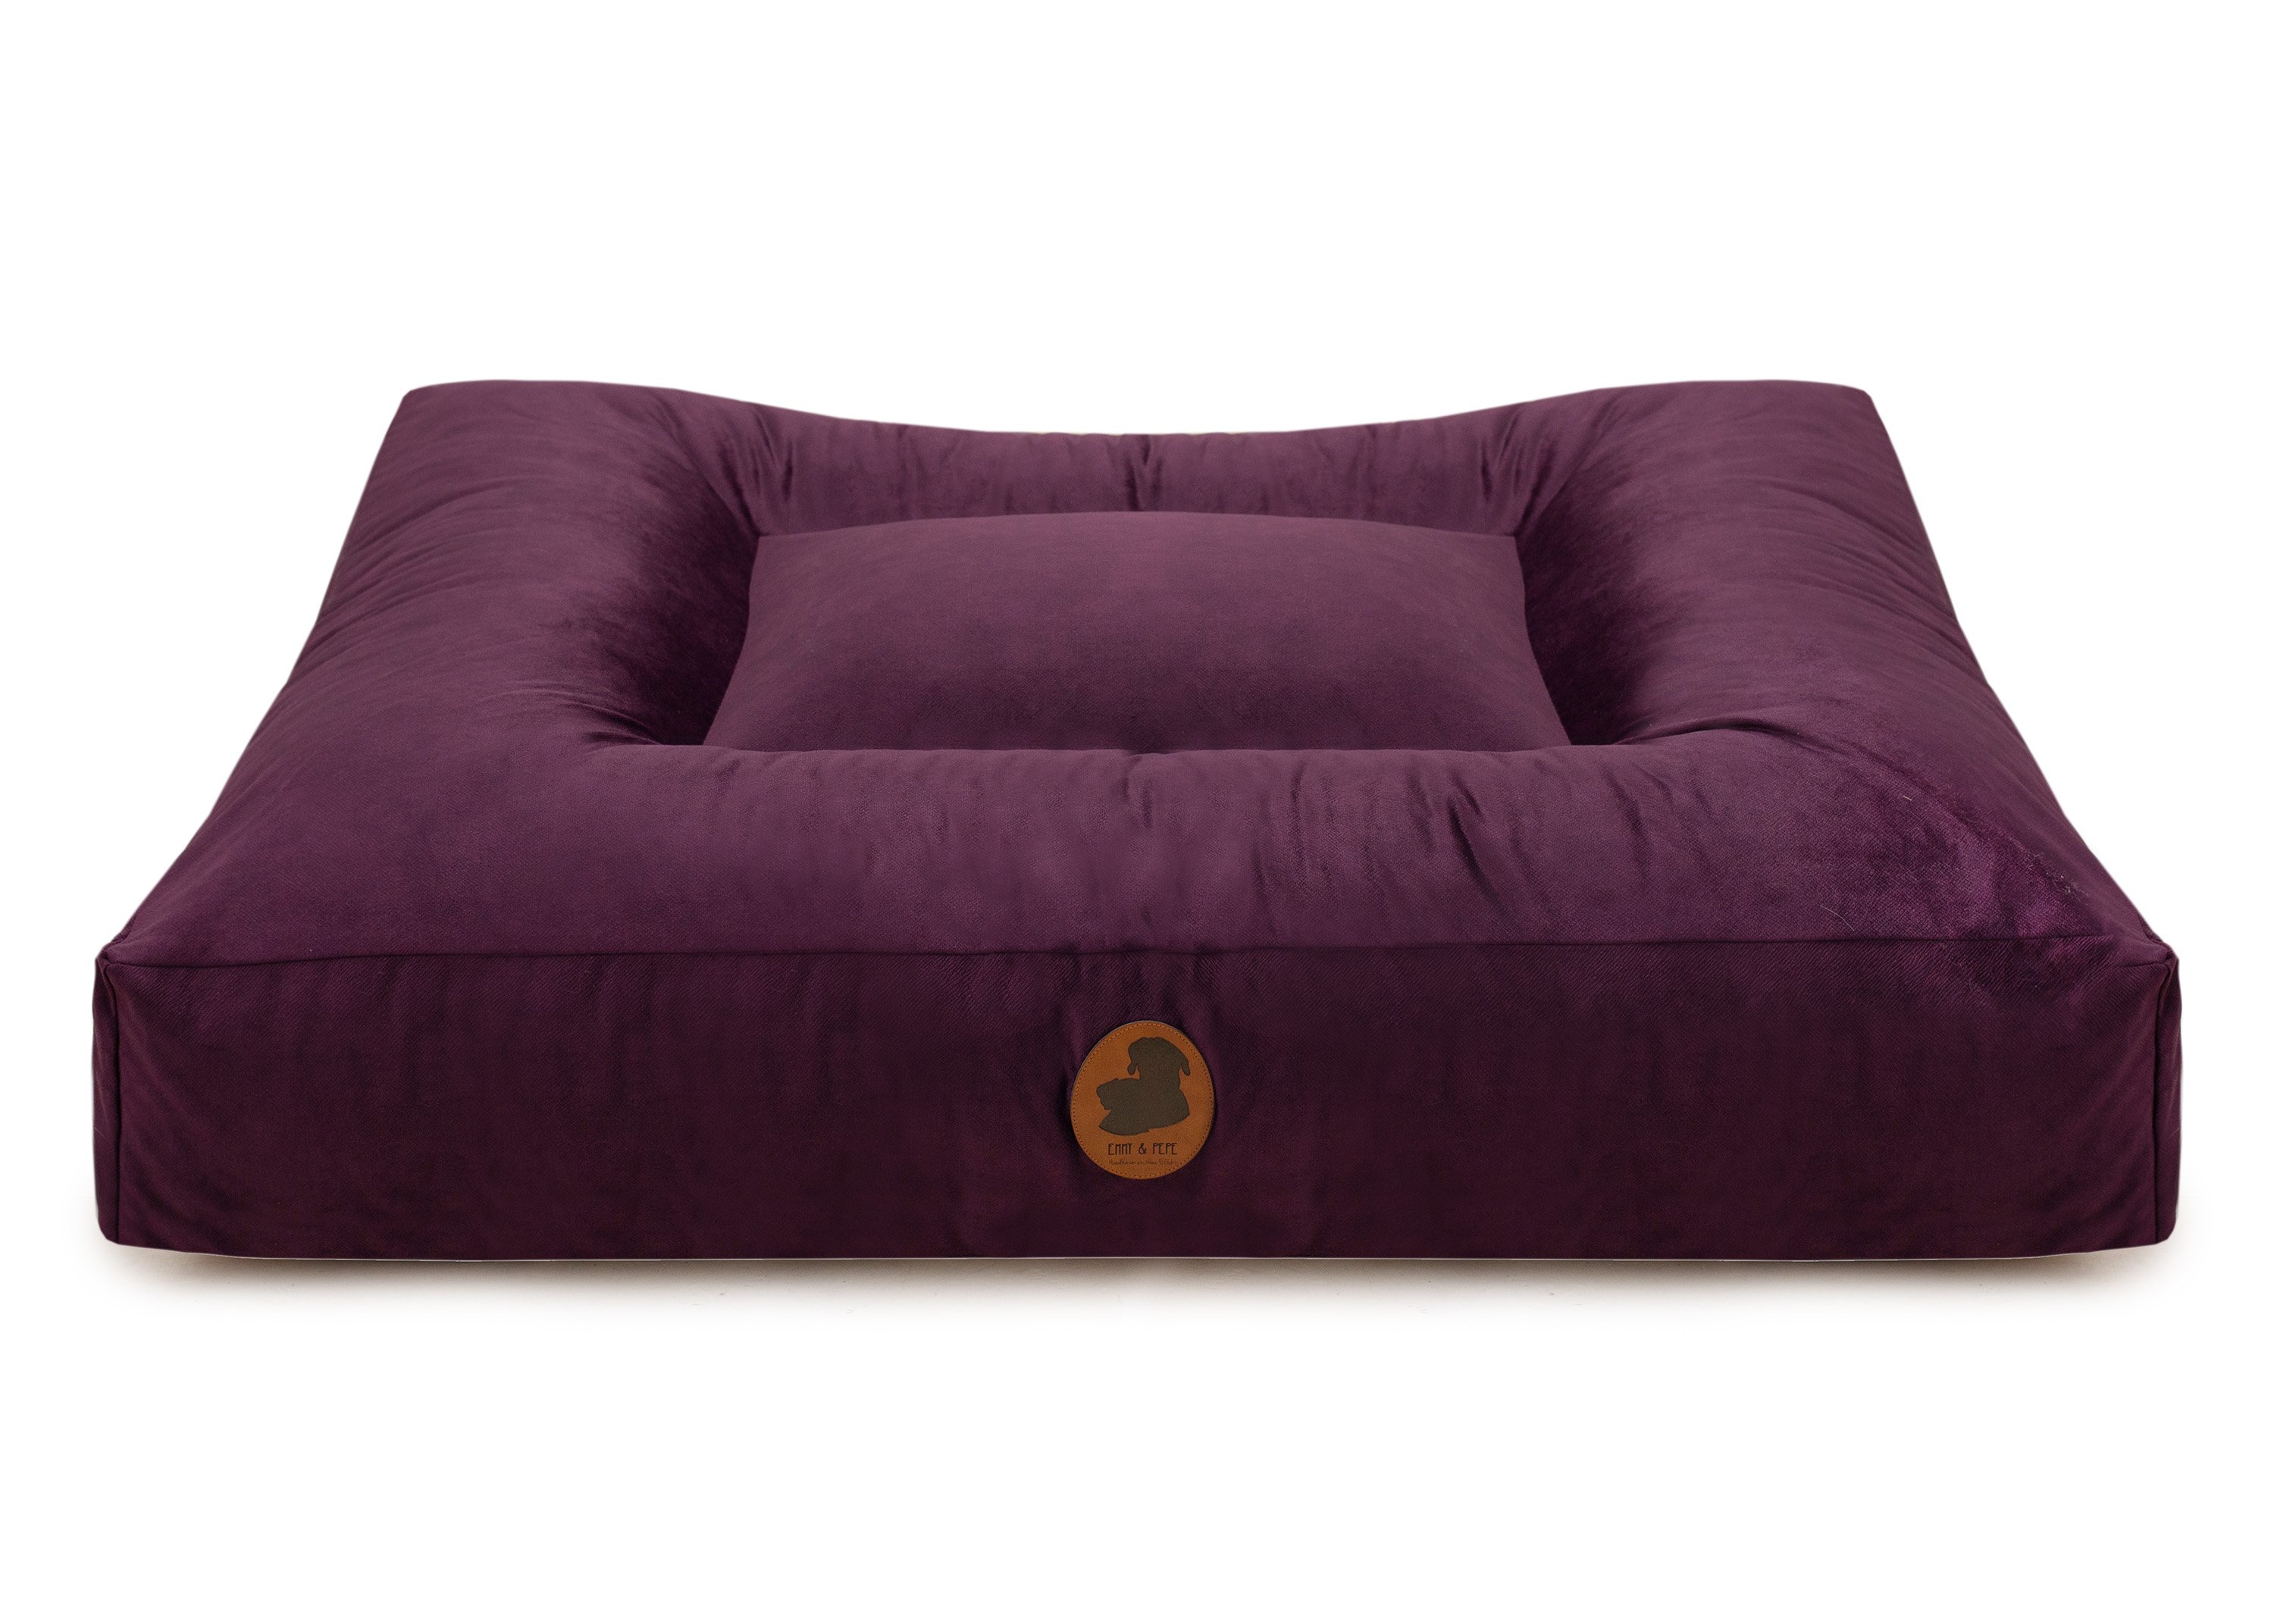 Wau-Bed Pets Friendly Purple